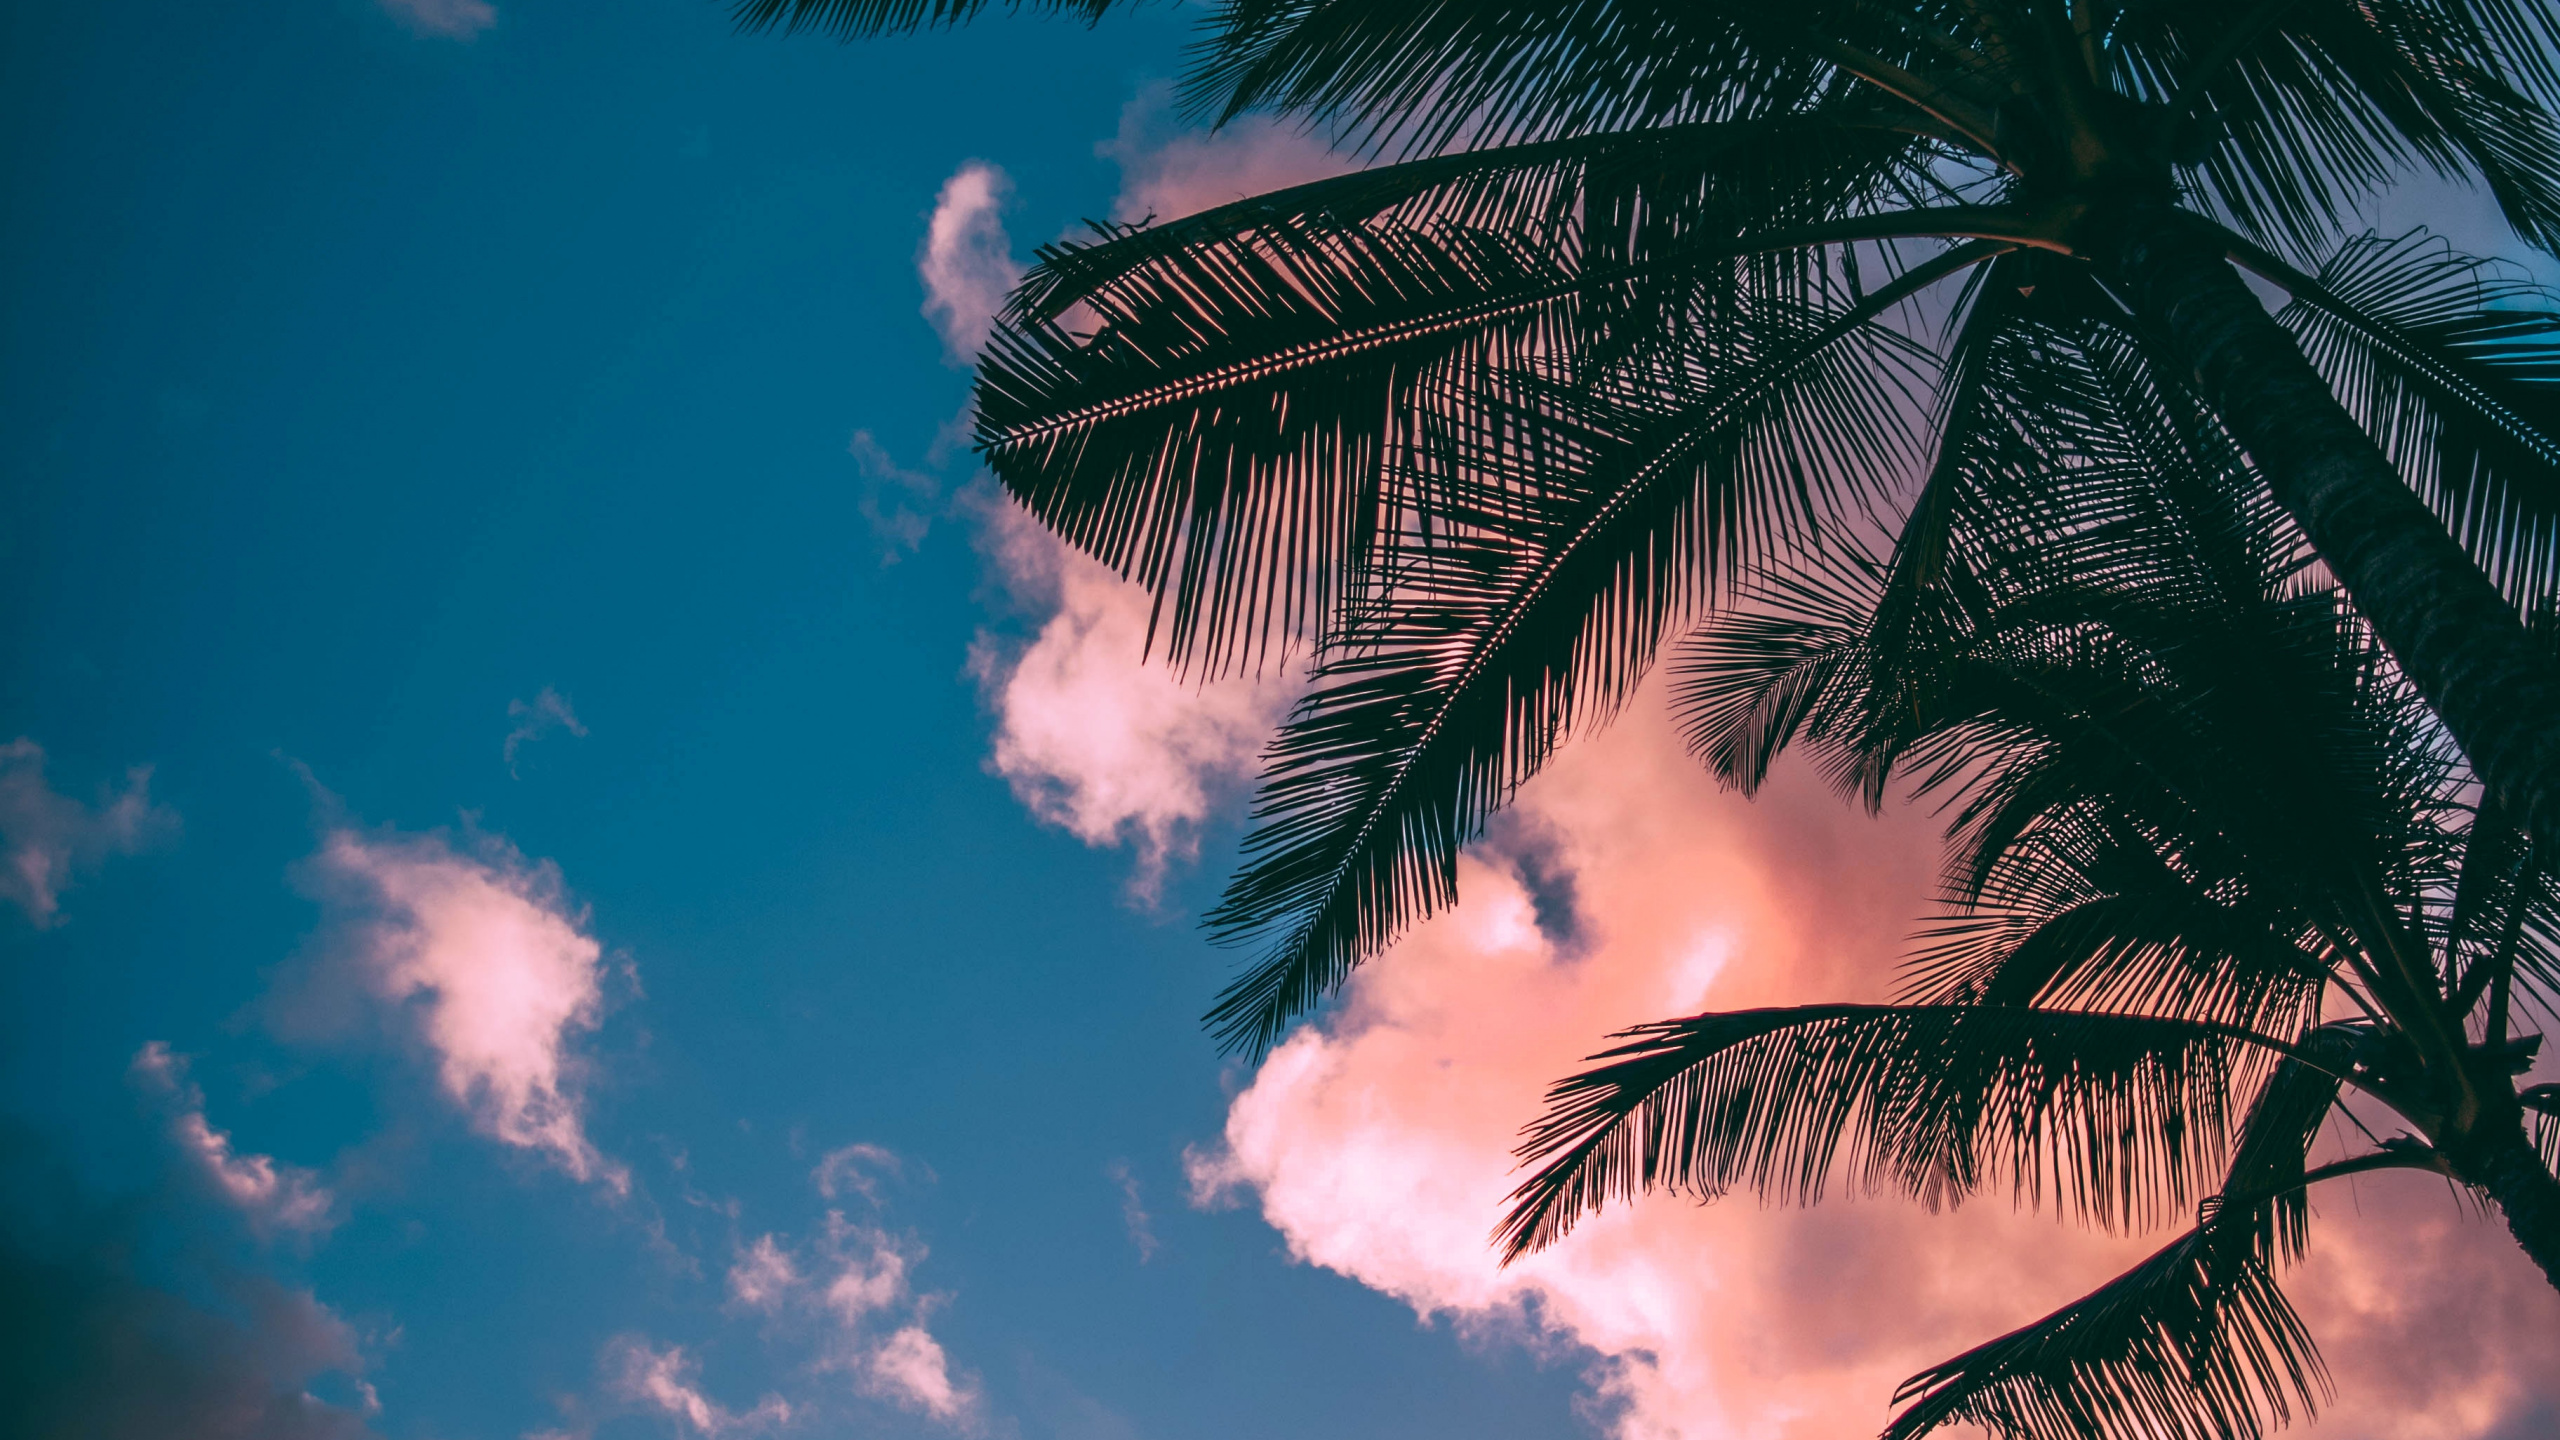 热带地区, 棕榈树, 天空, 云计算, Arecales 壁纸 2560x1440 允许